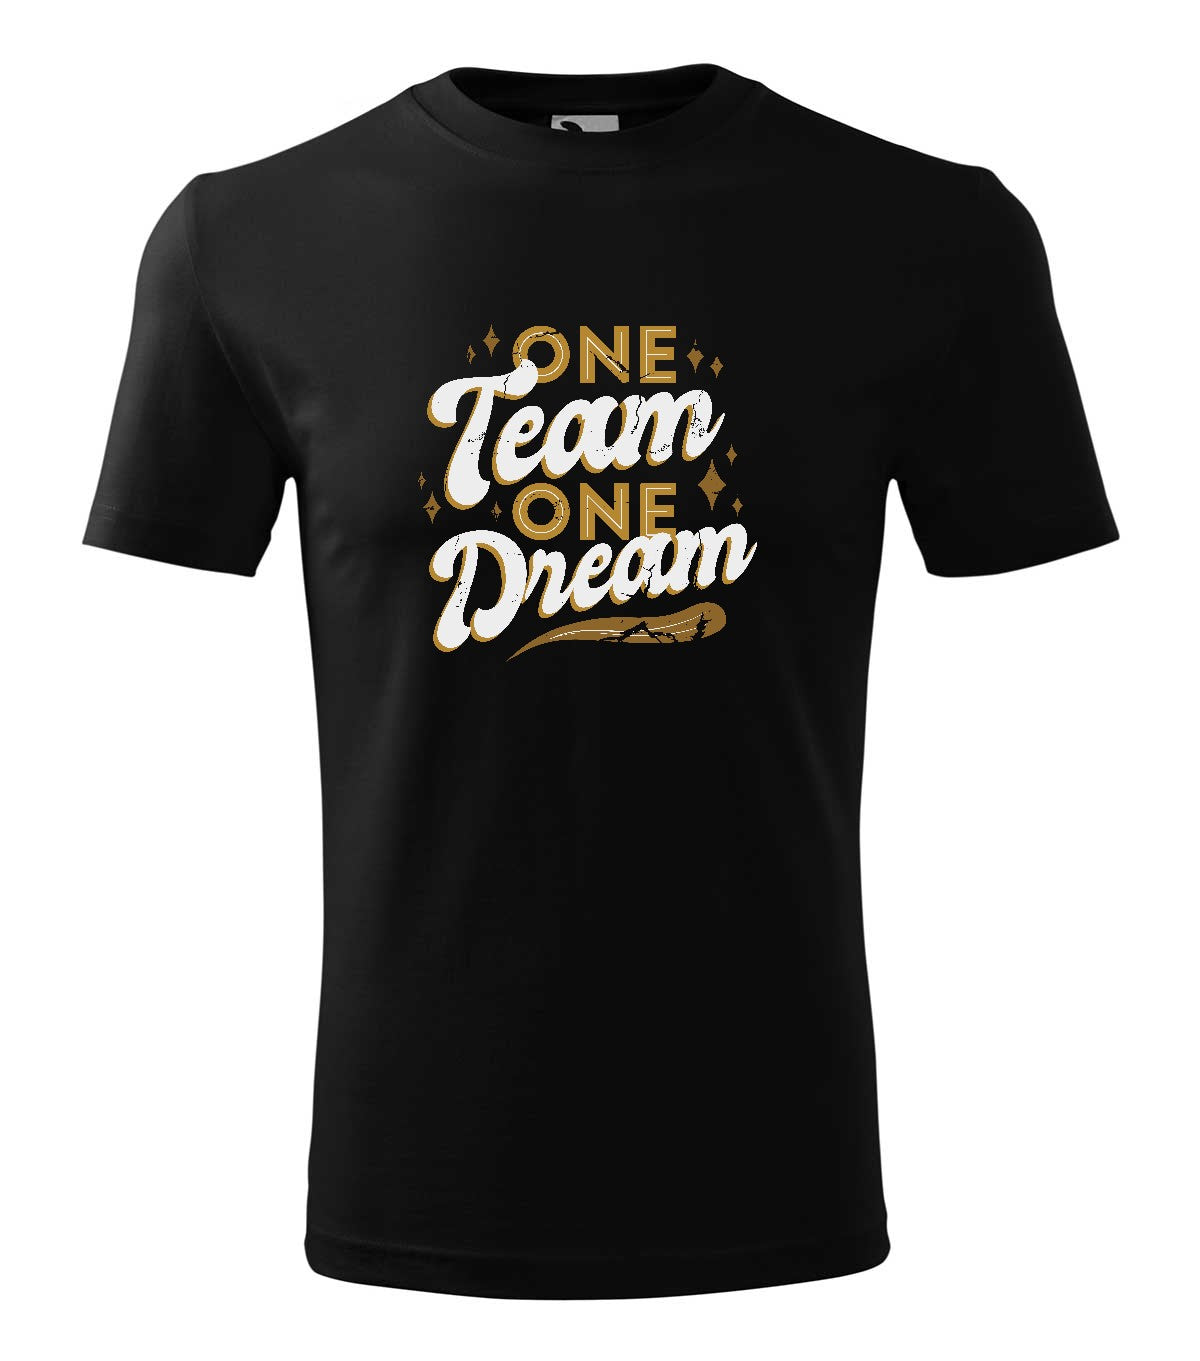 One team one dream  férfi technikai póló